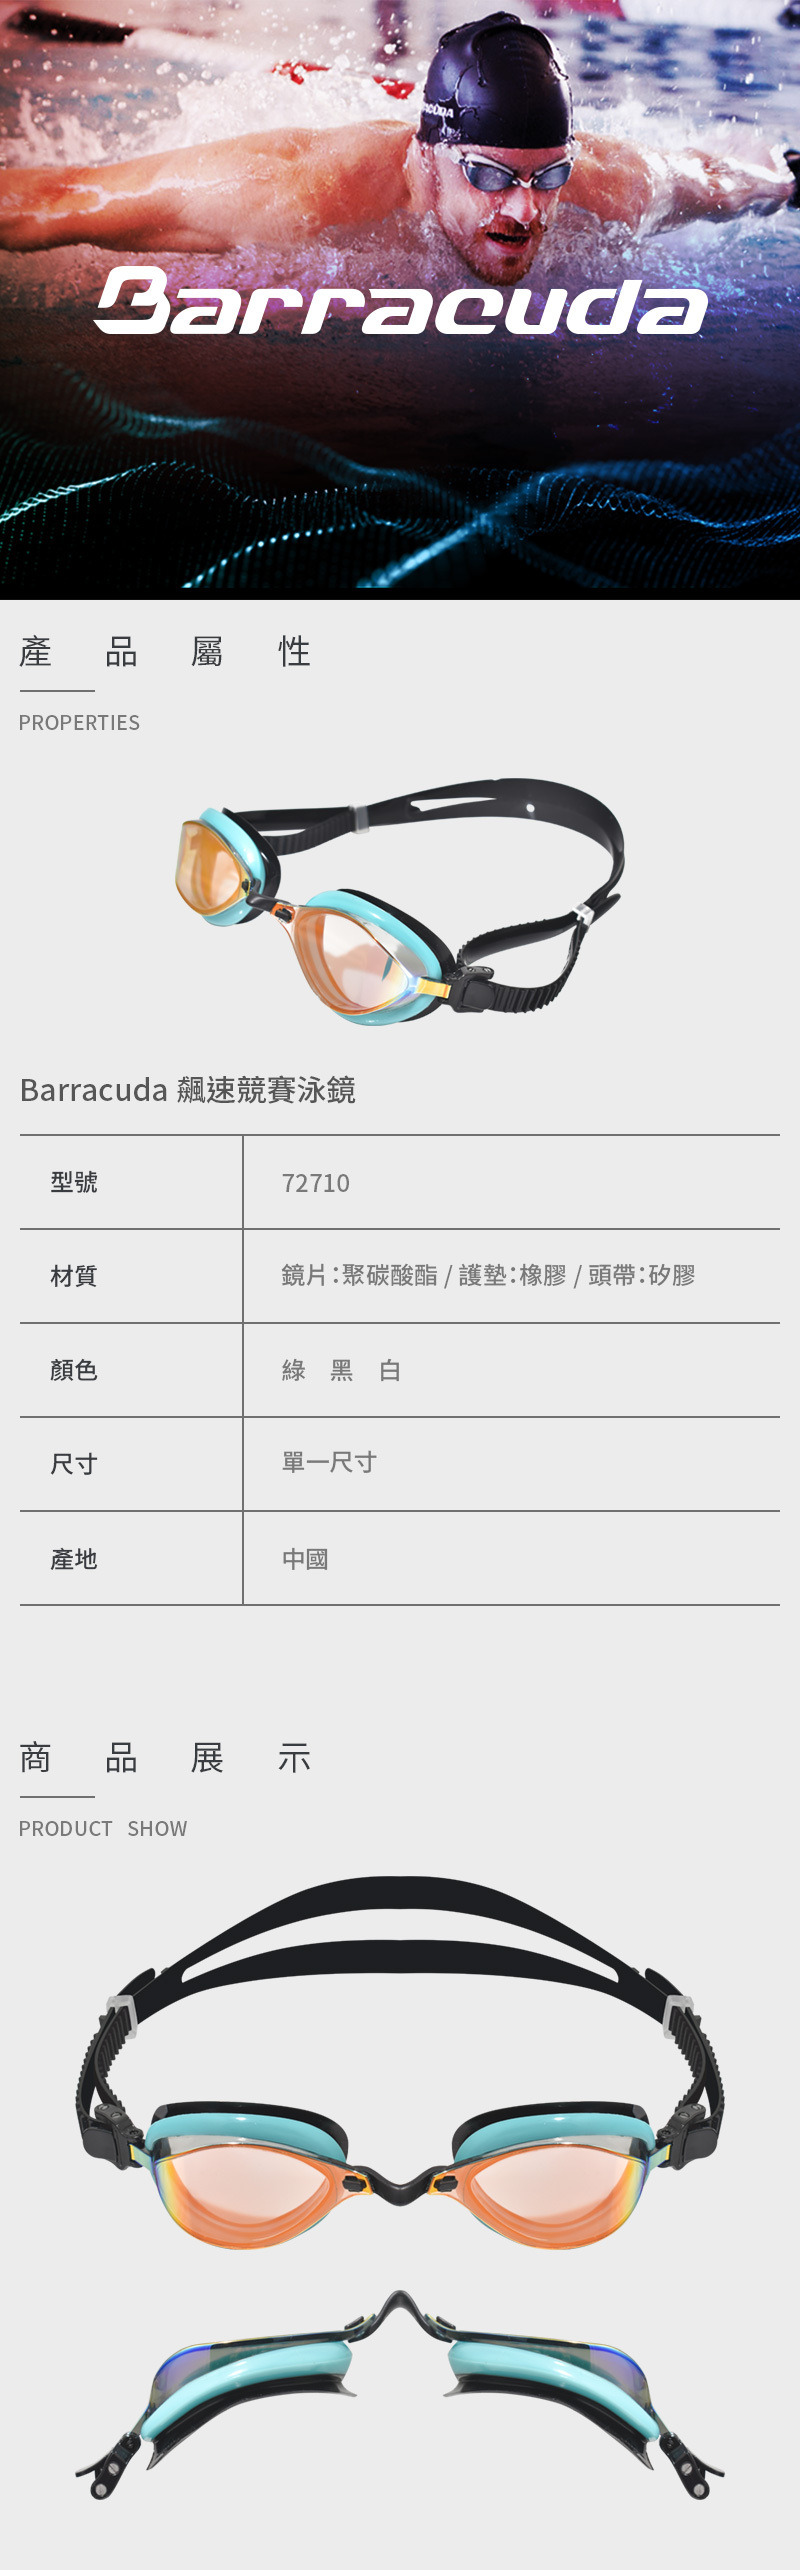 【Barracuda 巴洛酷達】成人競速泳鏡 72710